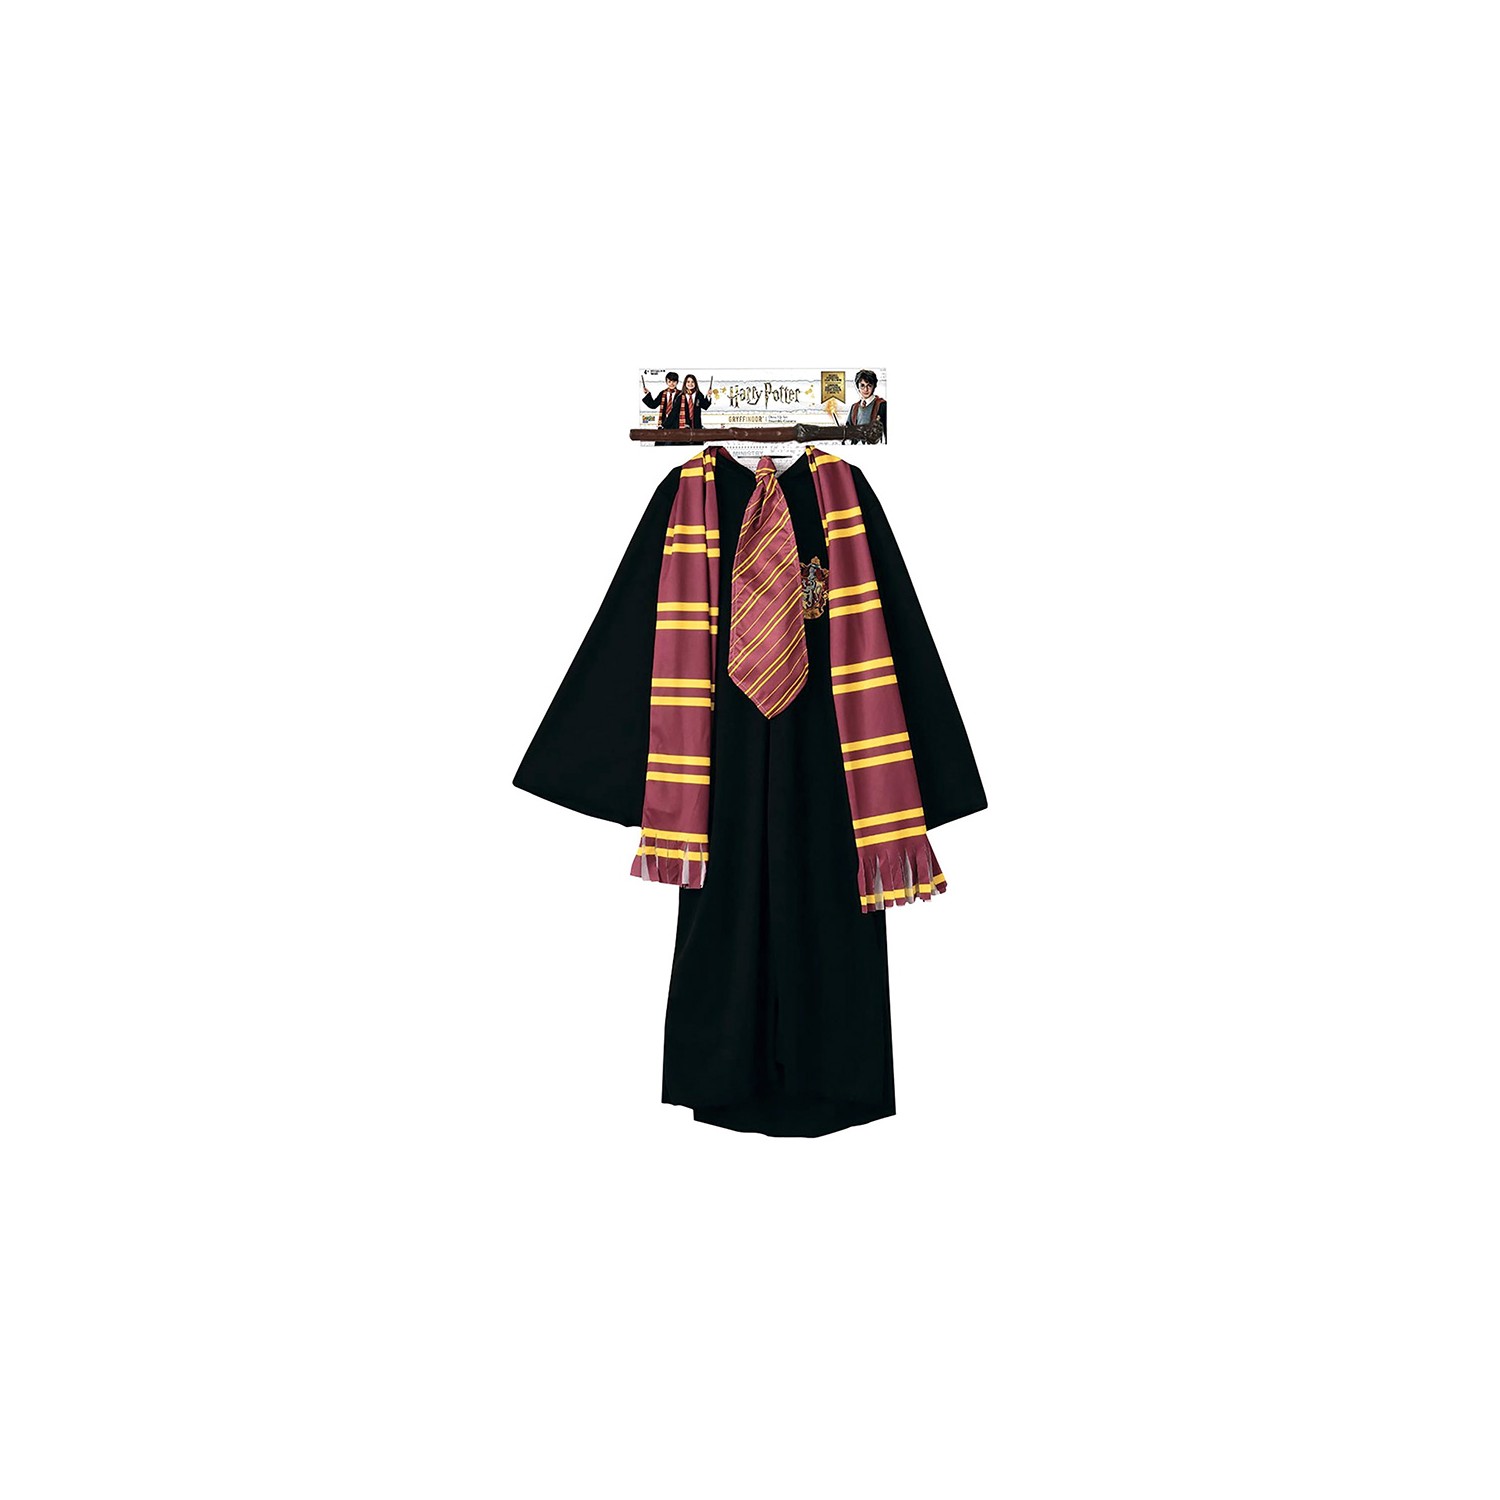 Kit déguisement et accessoires Harry Potter™, achat de